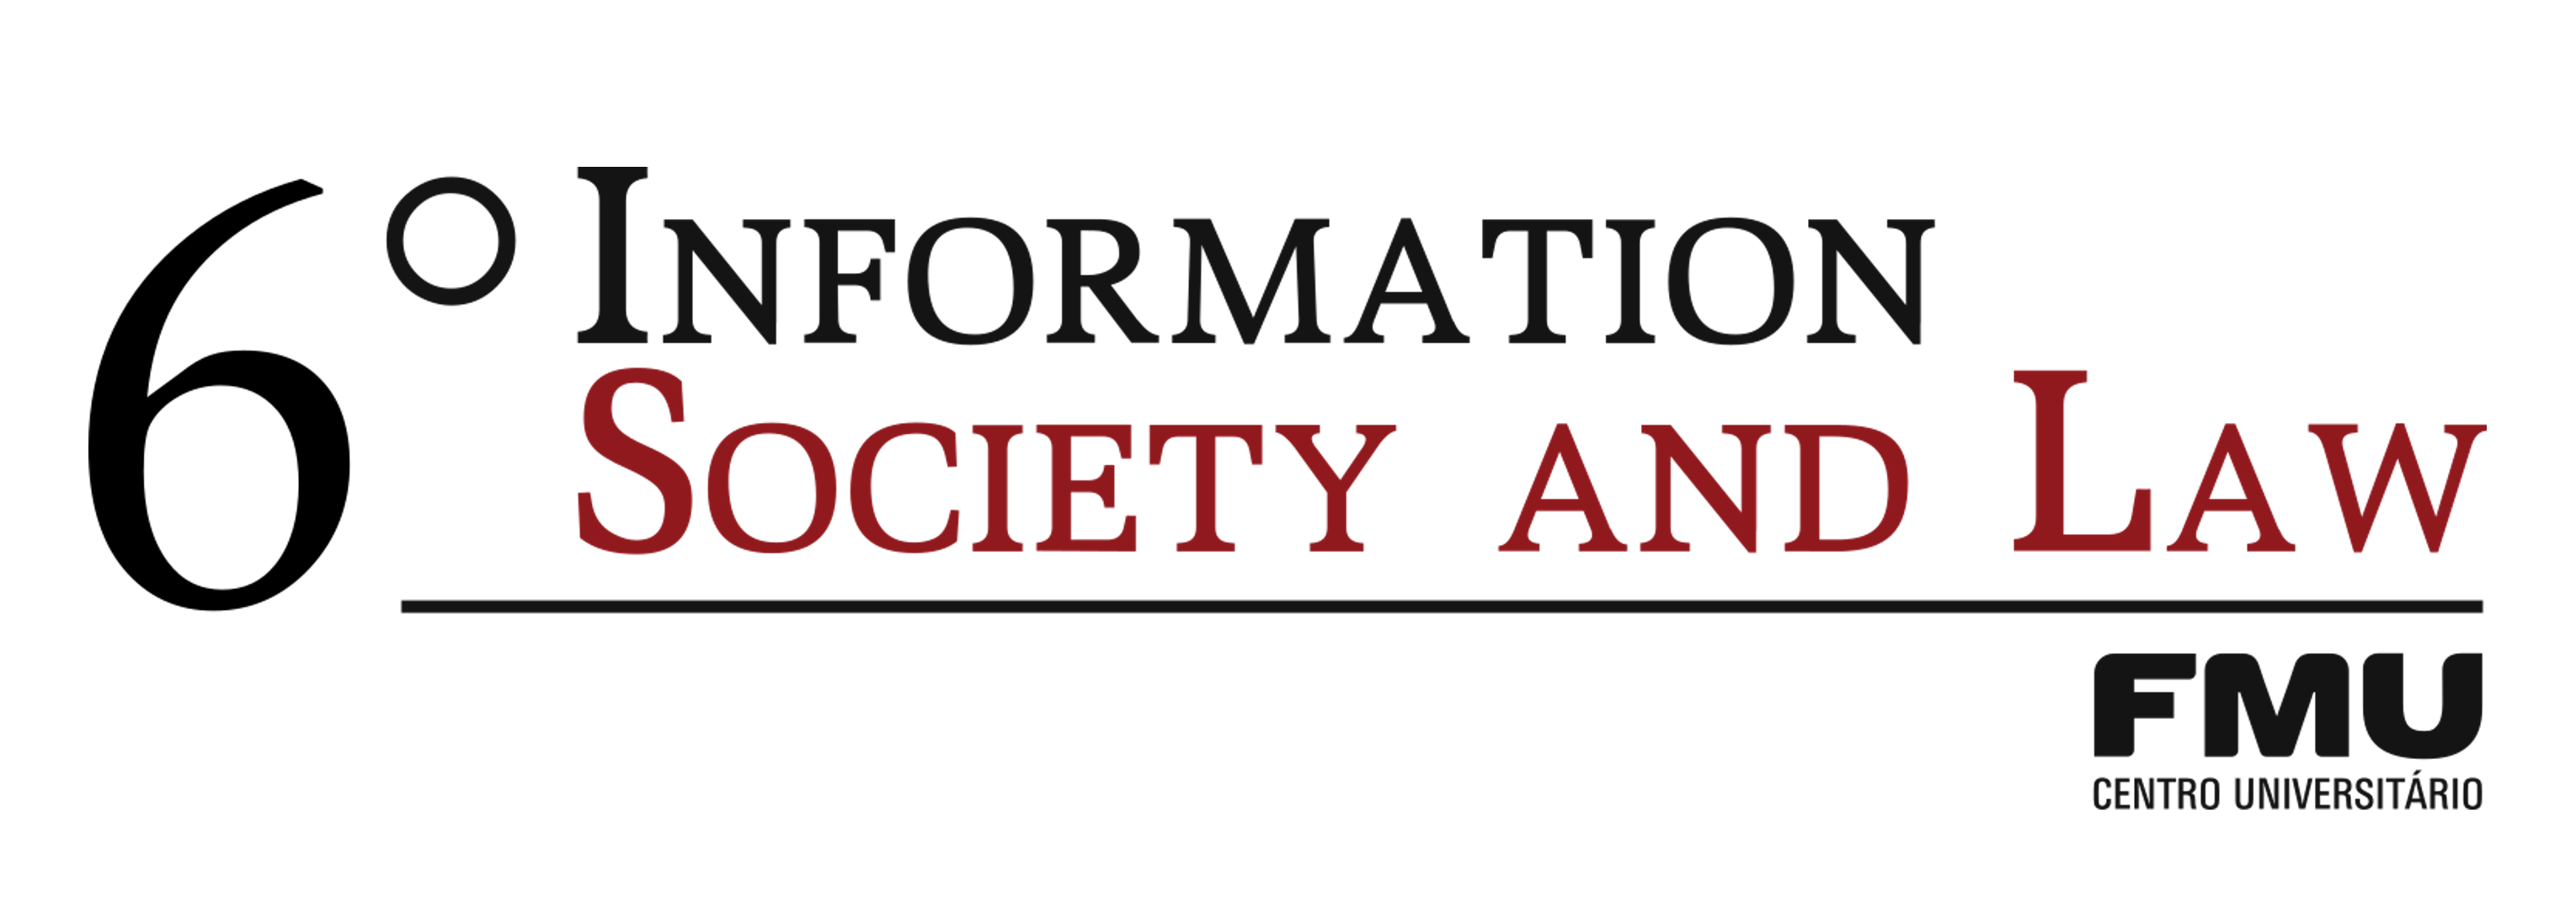 VI Congresso Internacional Information Society and Law